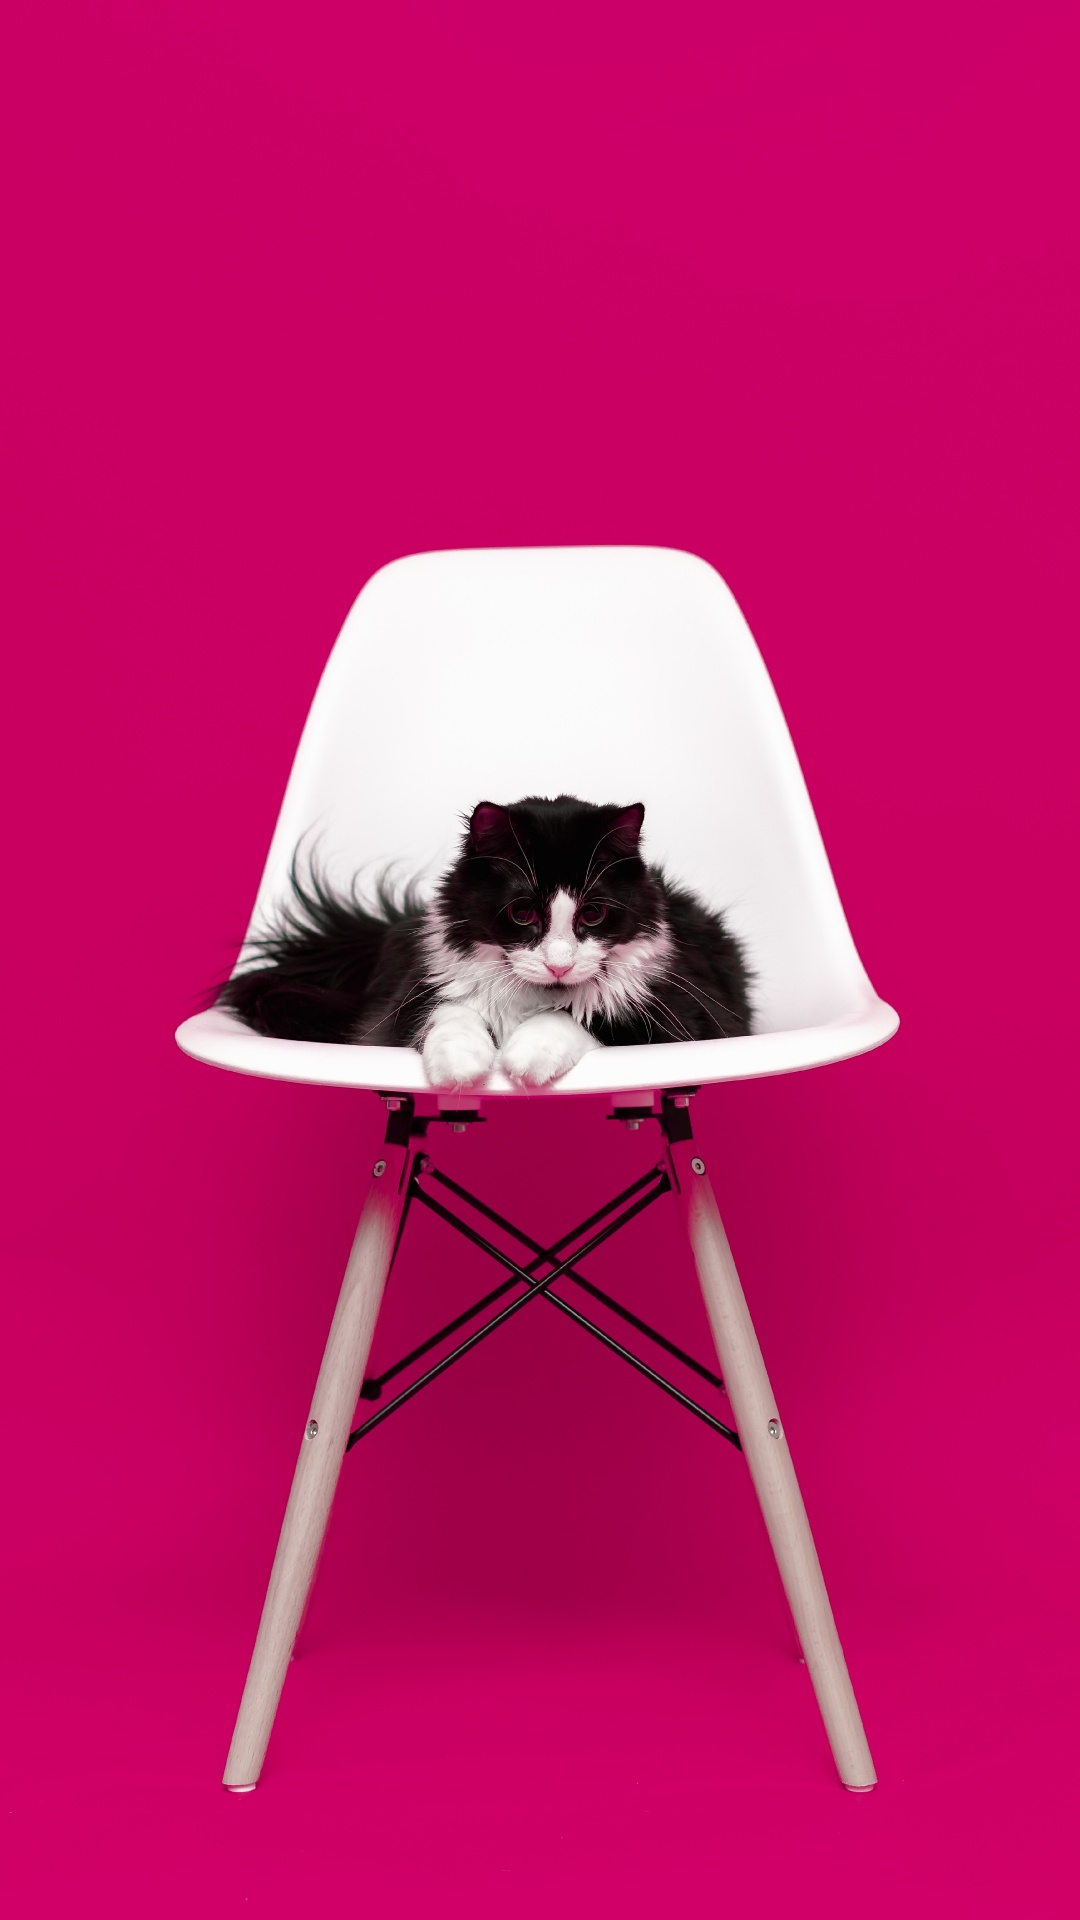 粉红色, 家具, 品红色, 椅子, 猫科 壁纸 1080x1920 允许